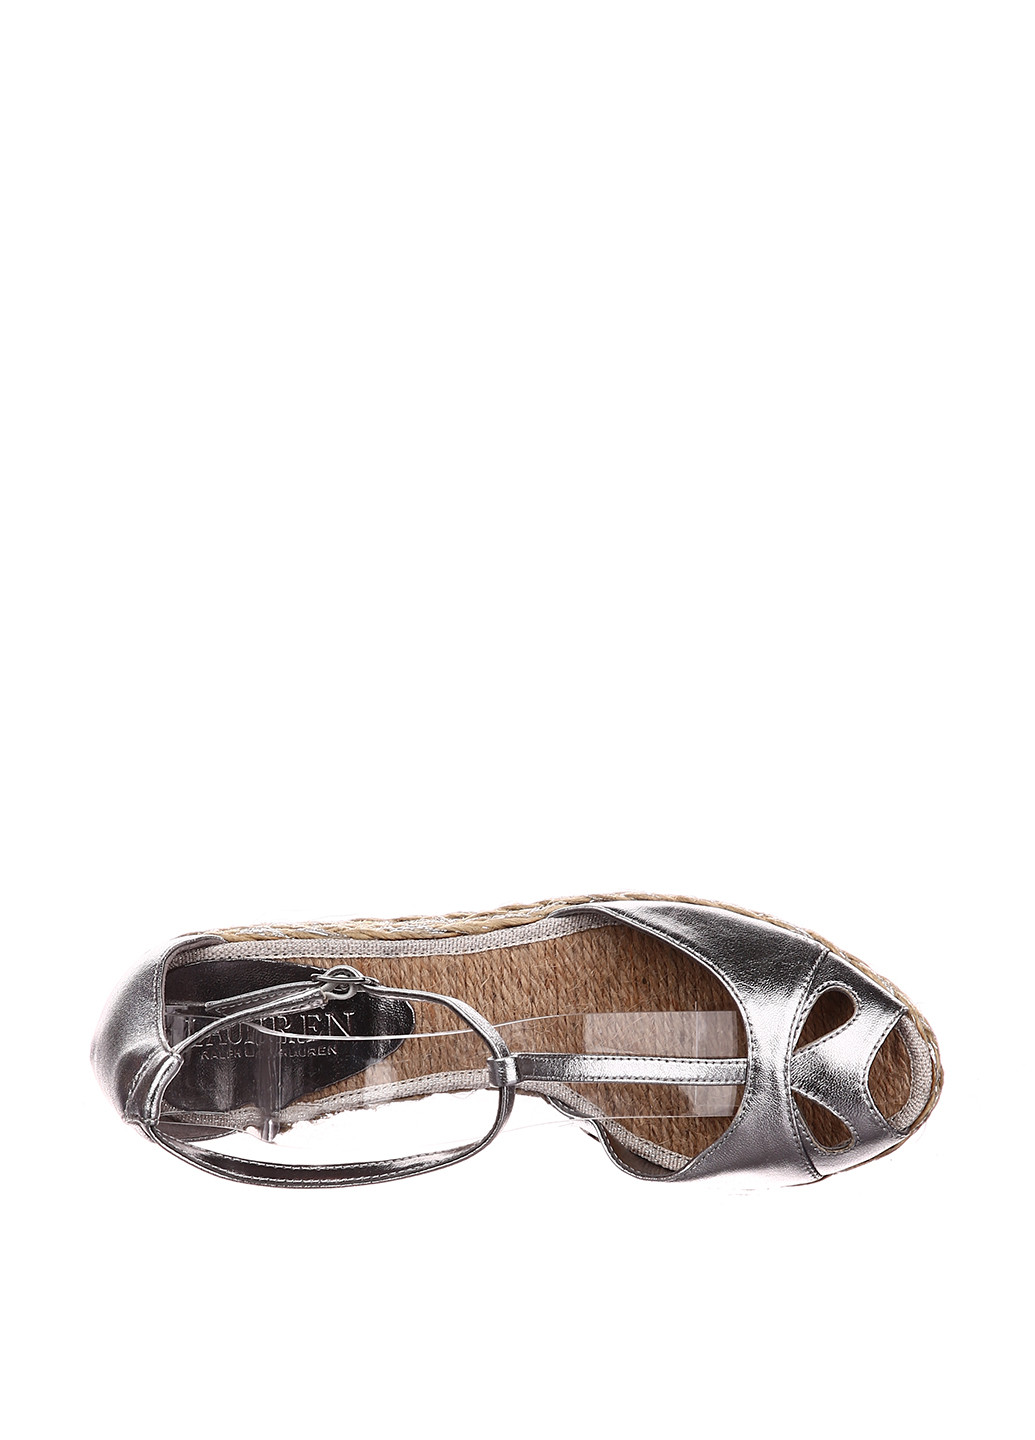 Серебряные босоножки Ralph Lauren с ремешком на плетеной подошве